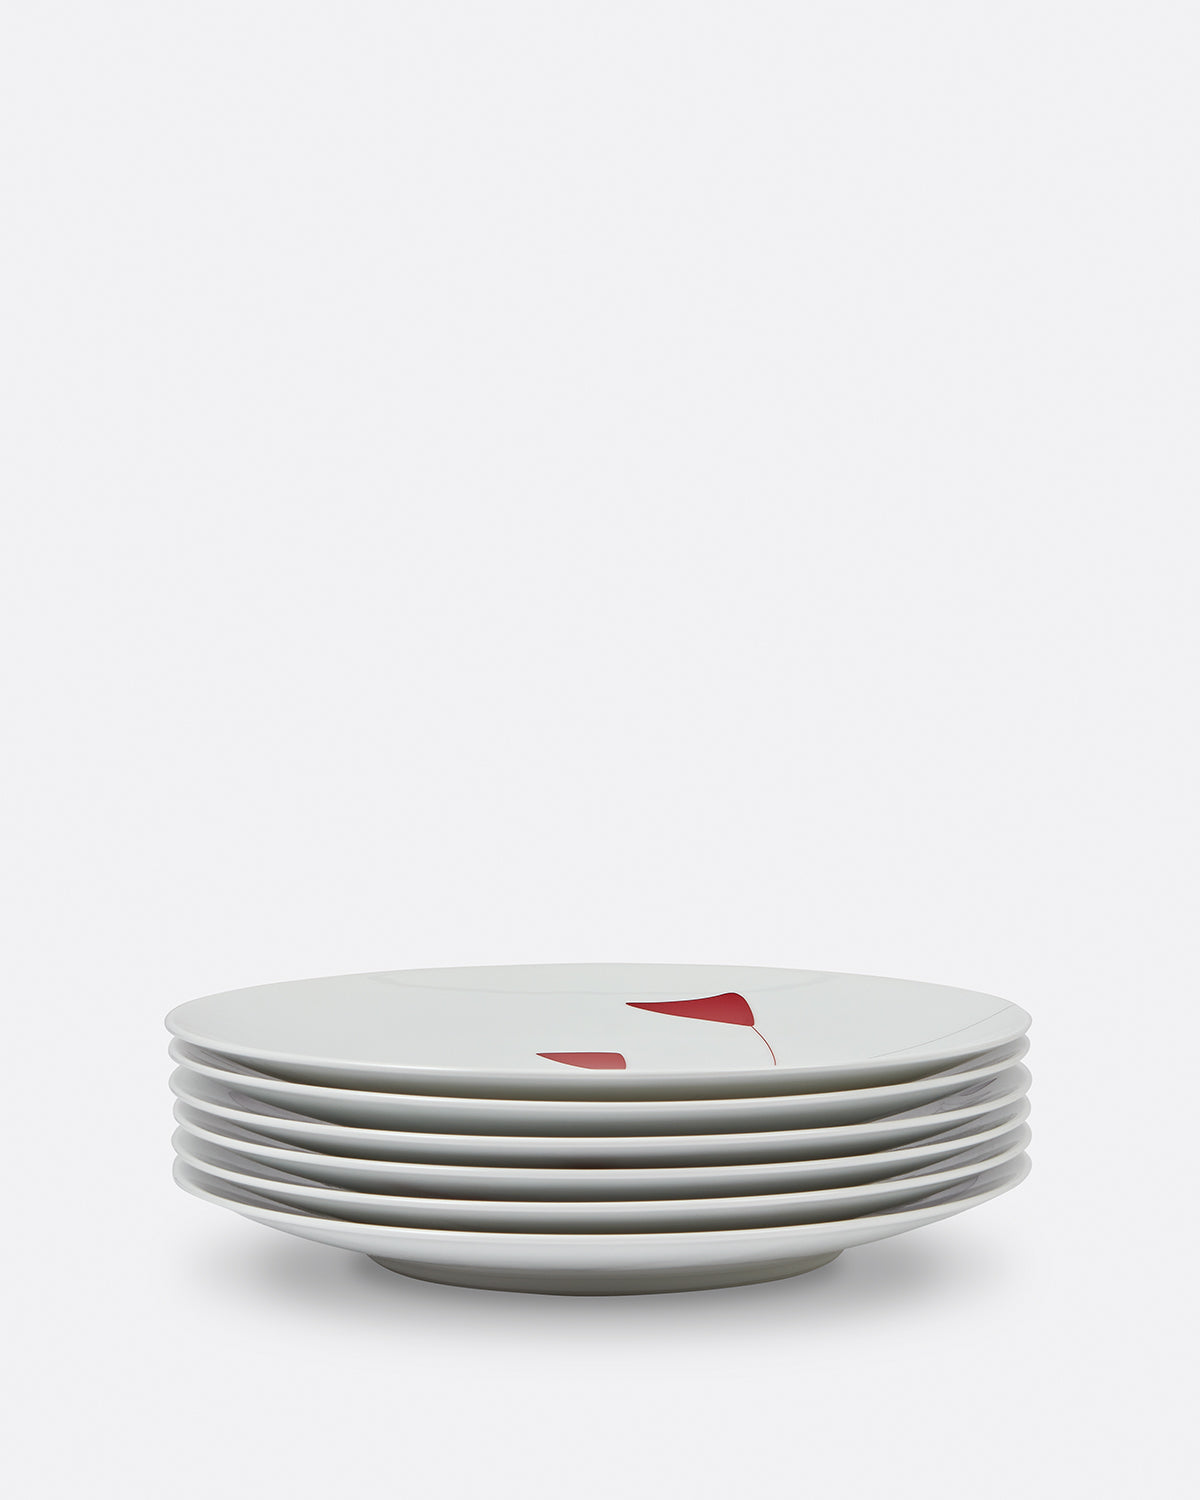 Alexander Calder Set of 6 Plates Default Title